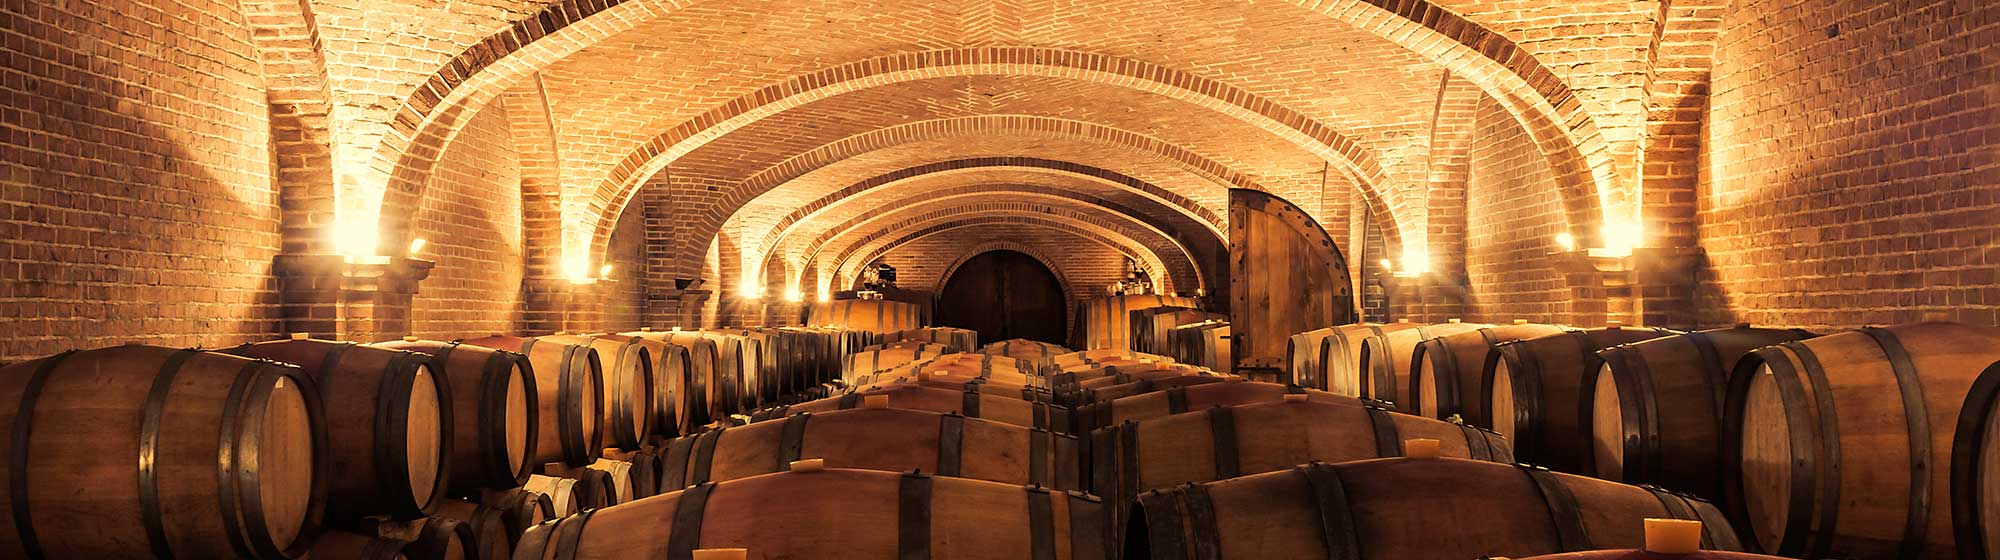 Tonneaux contenant du vin dans une cave